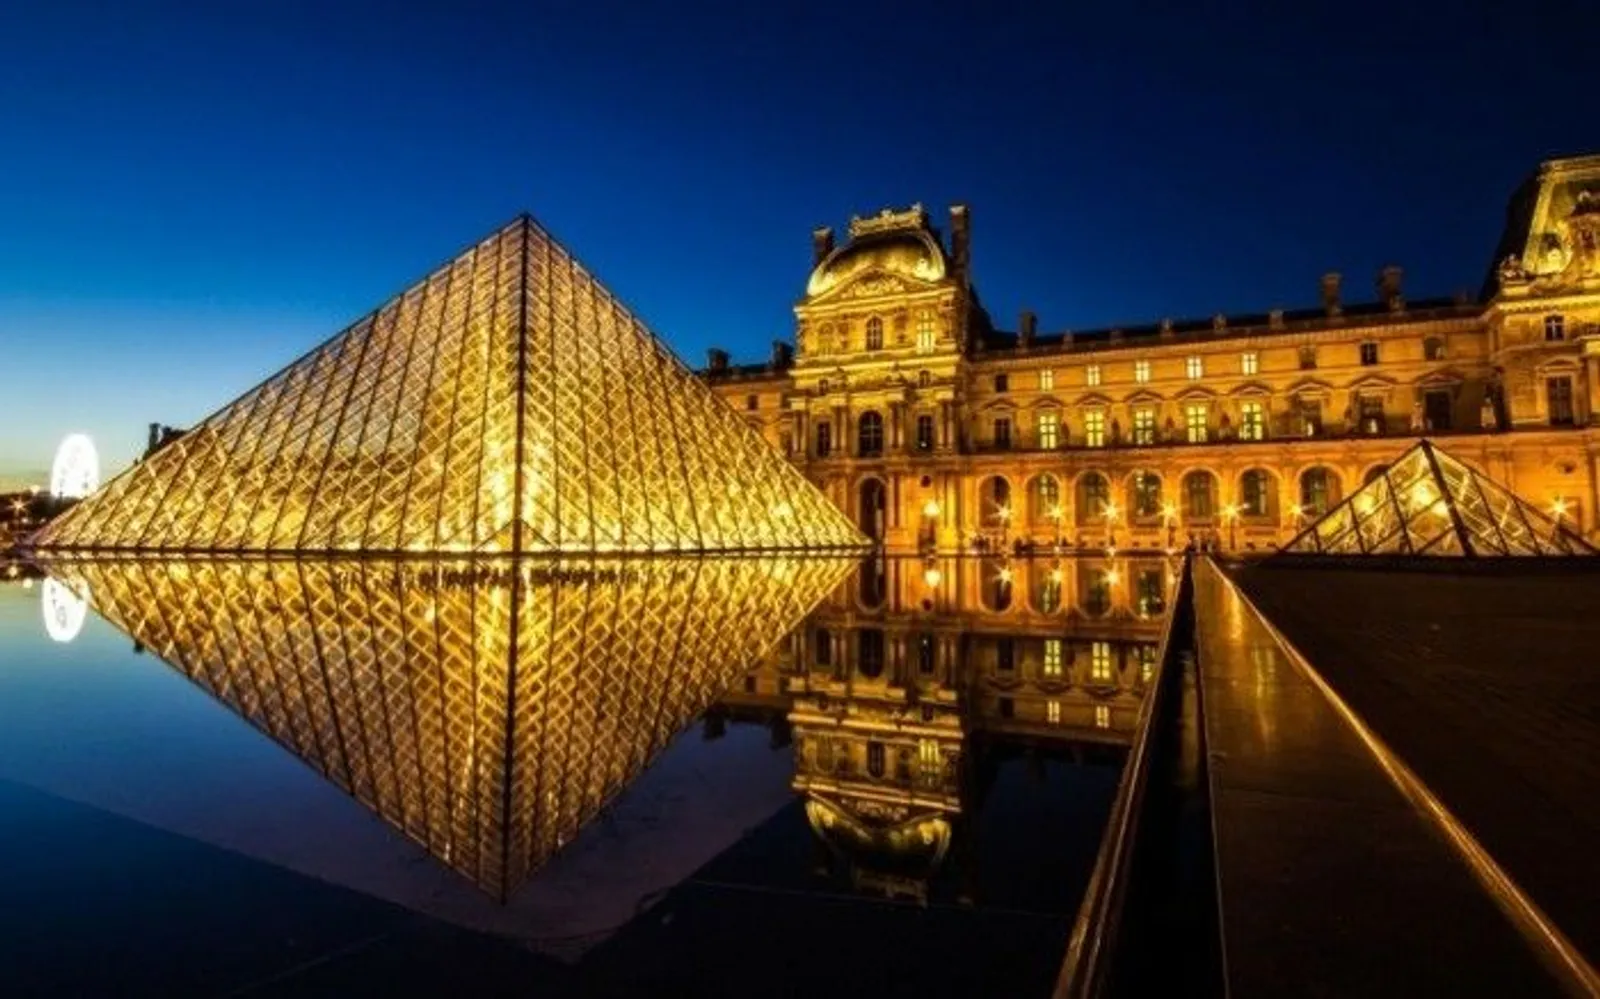 Mengenal Carrousel Du Louvre, Tempat Perhelatan Paris Fashion Week